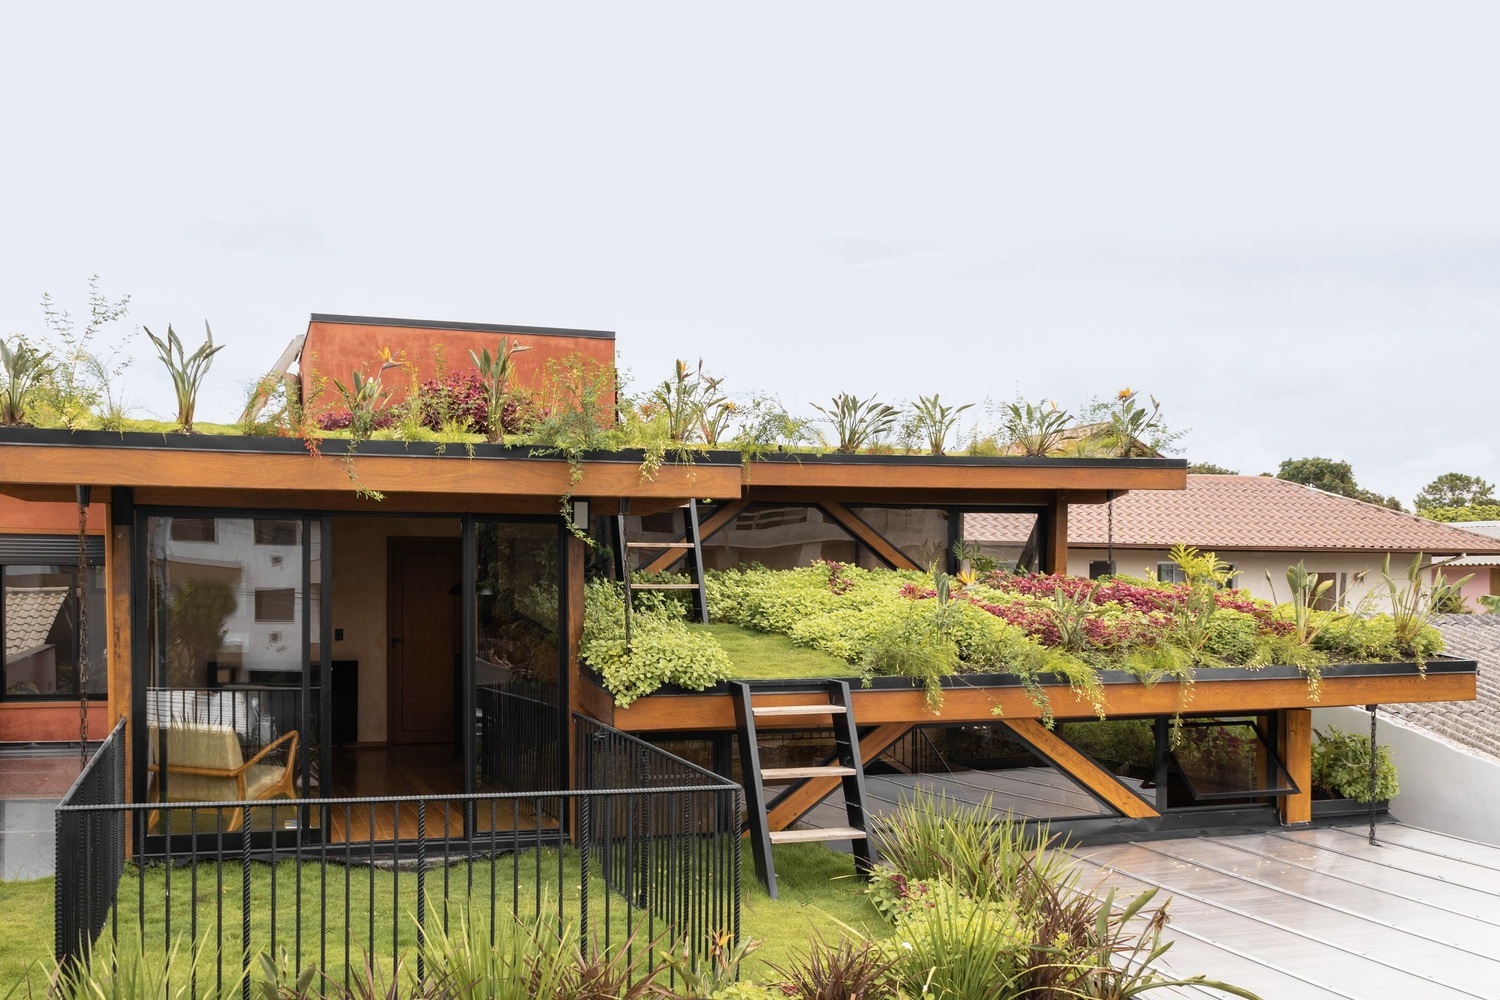 View - Ngôi nhà chia 2 khối, phủ xanh với 3 khu vườn trên mái xếp hình bậc thang | Báo Dân trí